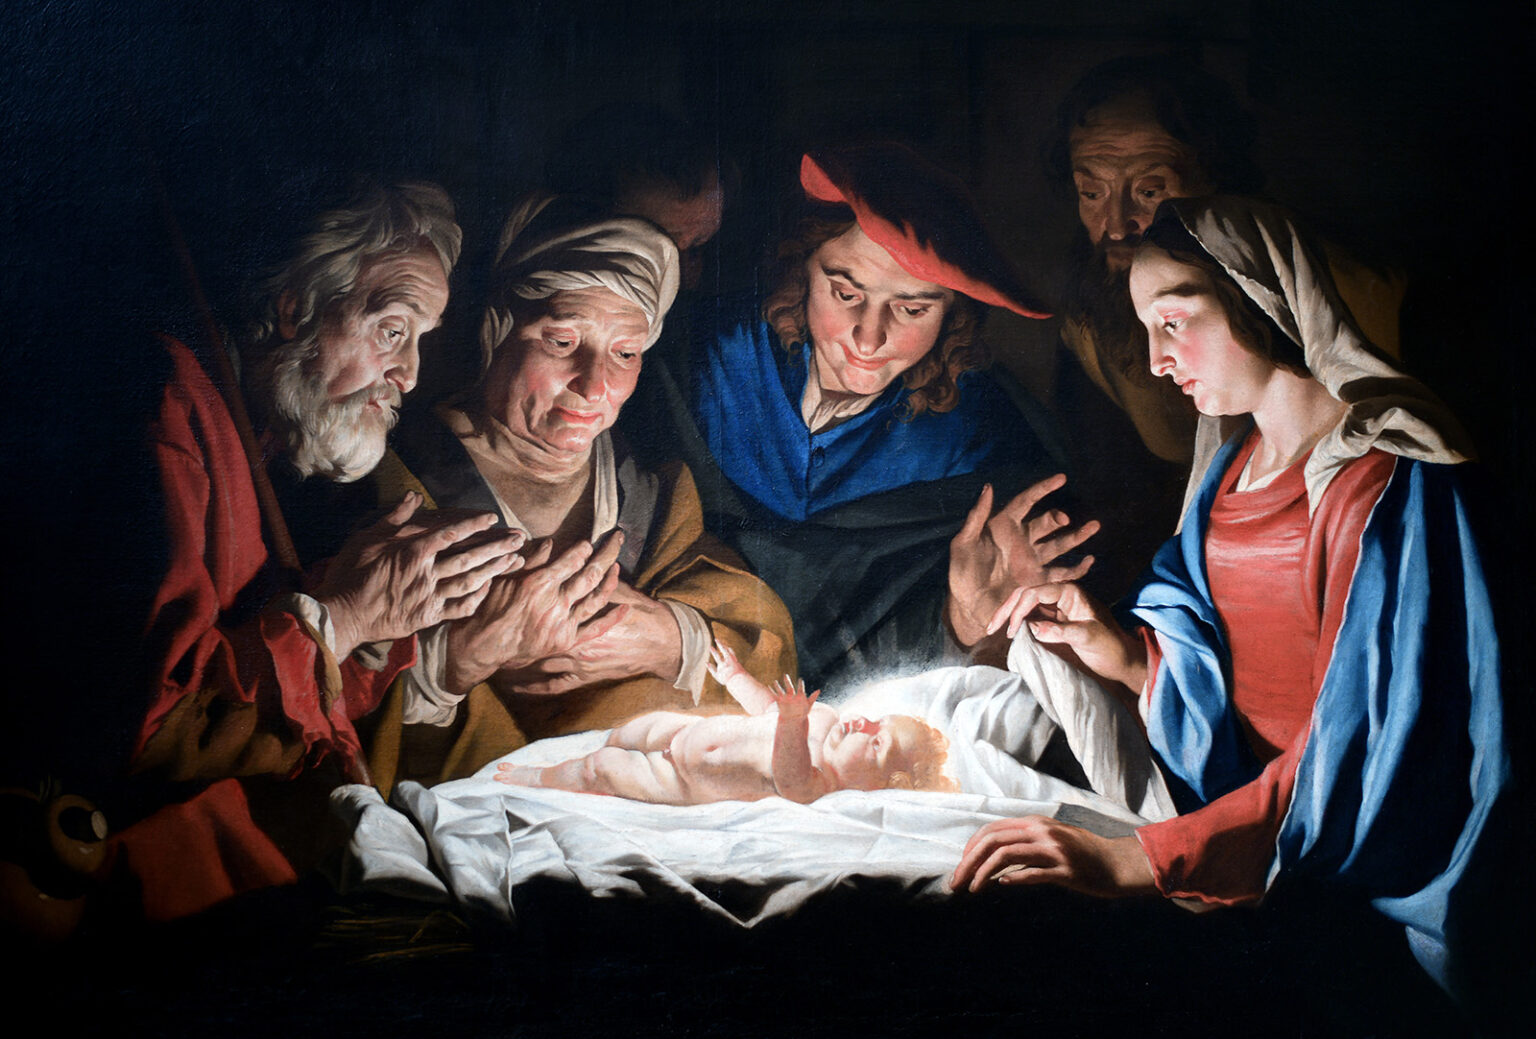 Narodzenie Pana Jezusa